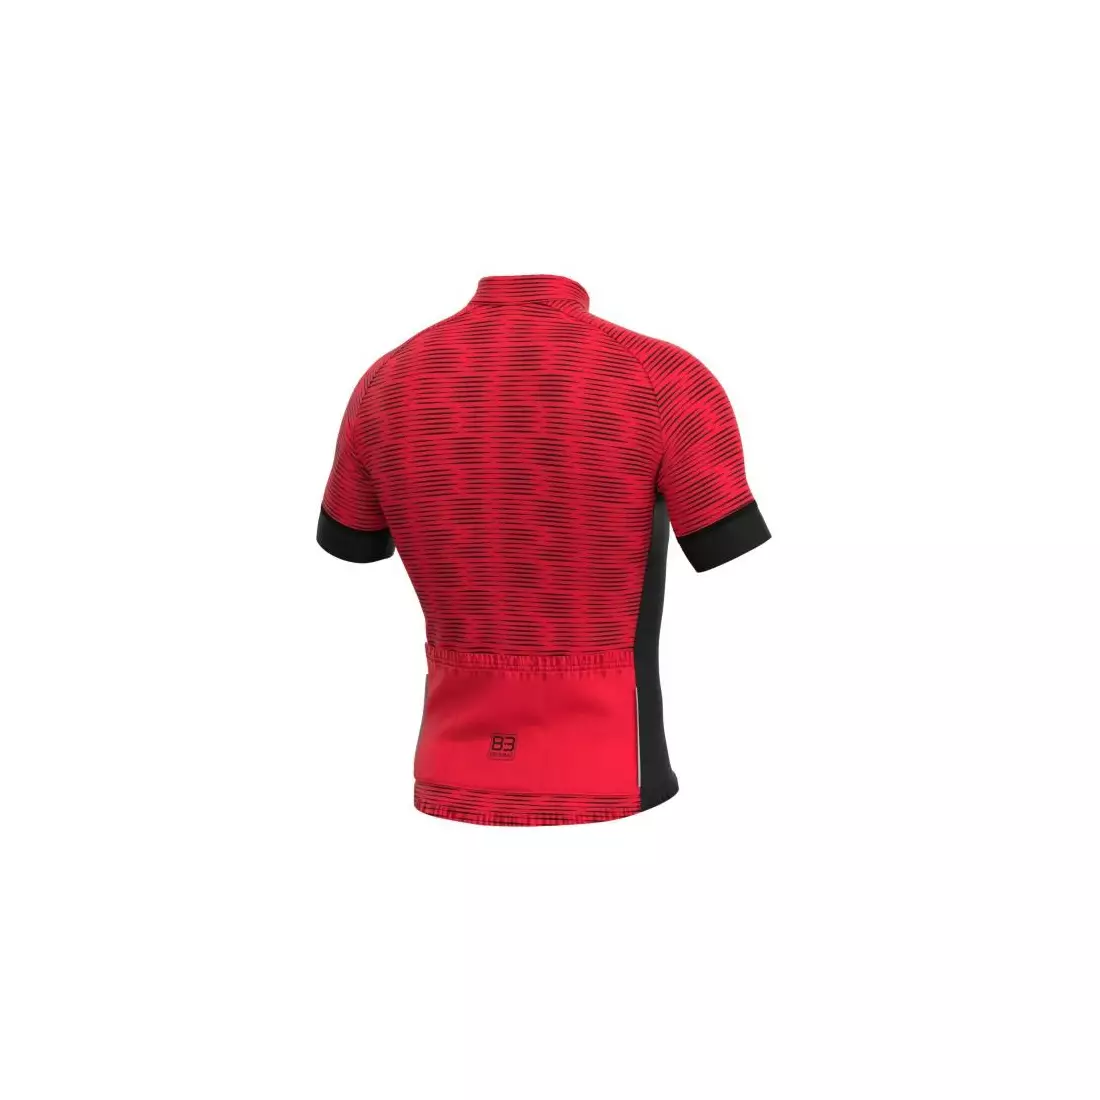 Biemme męska koszulka rowerowa CIPRESS czerwono-czarna